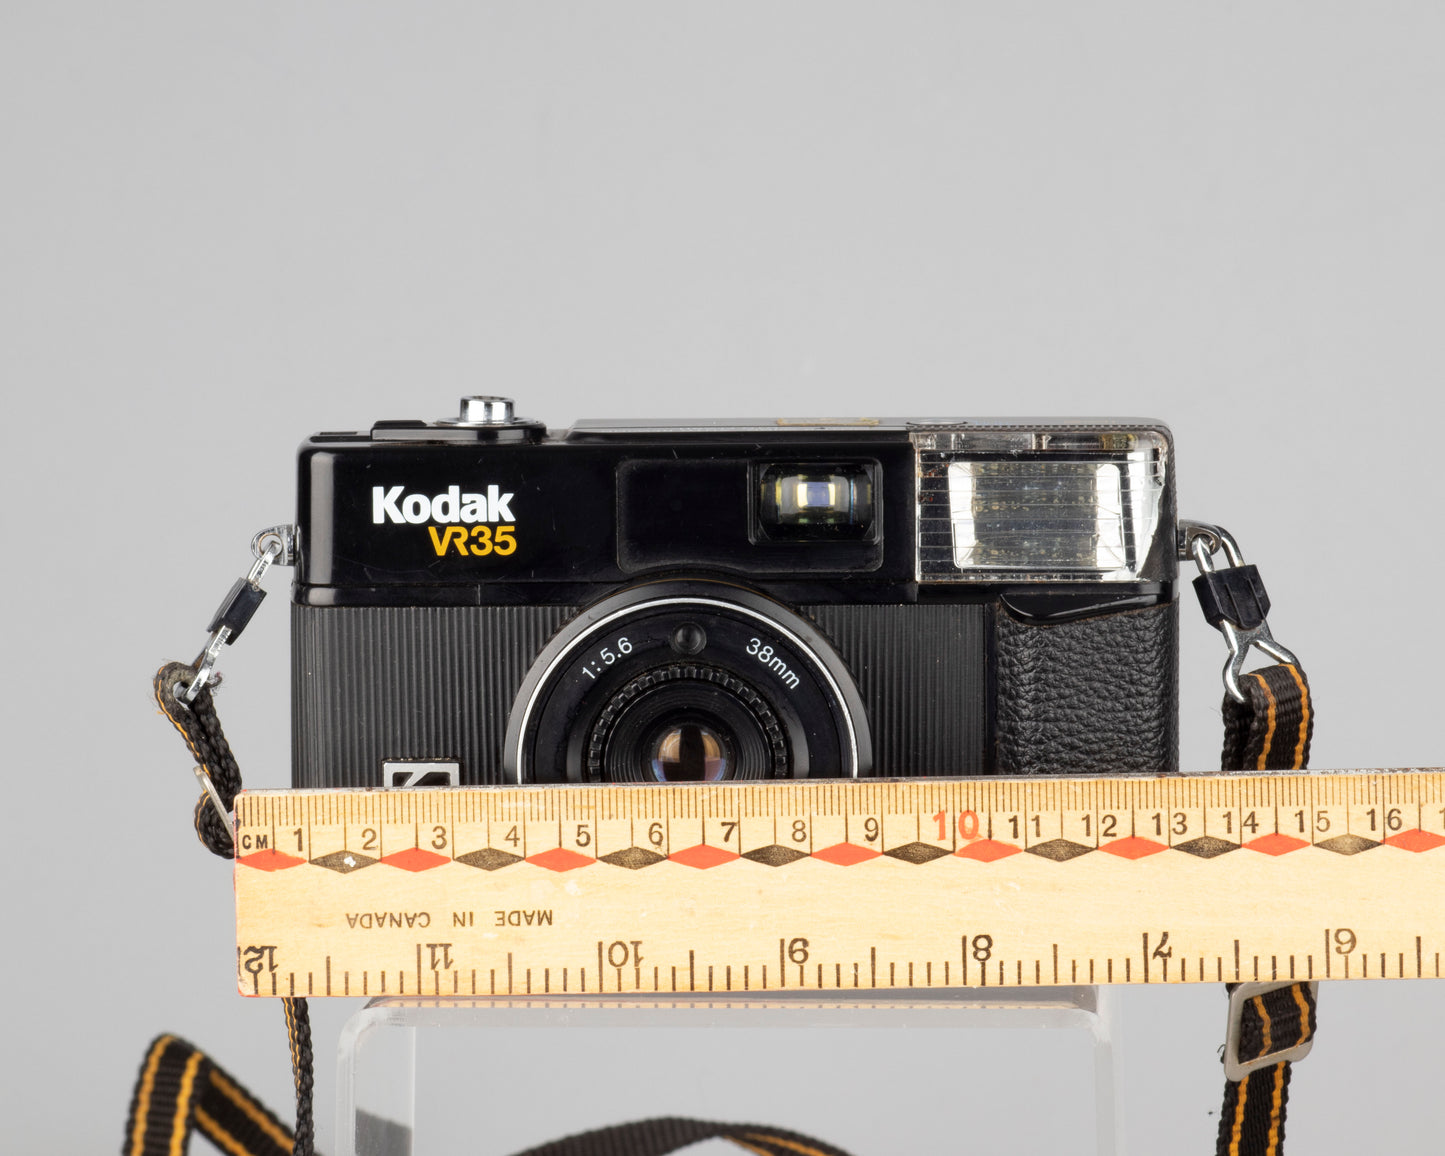 Kodak VR35 K6 35mm camera